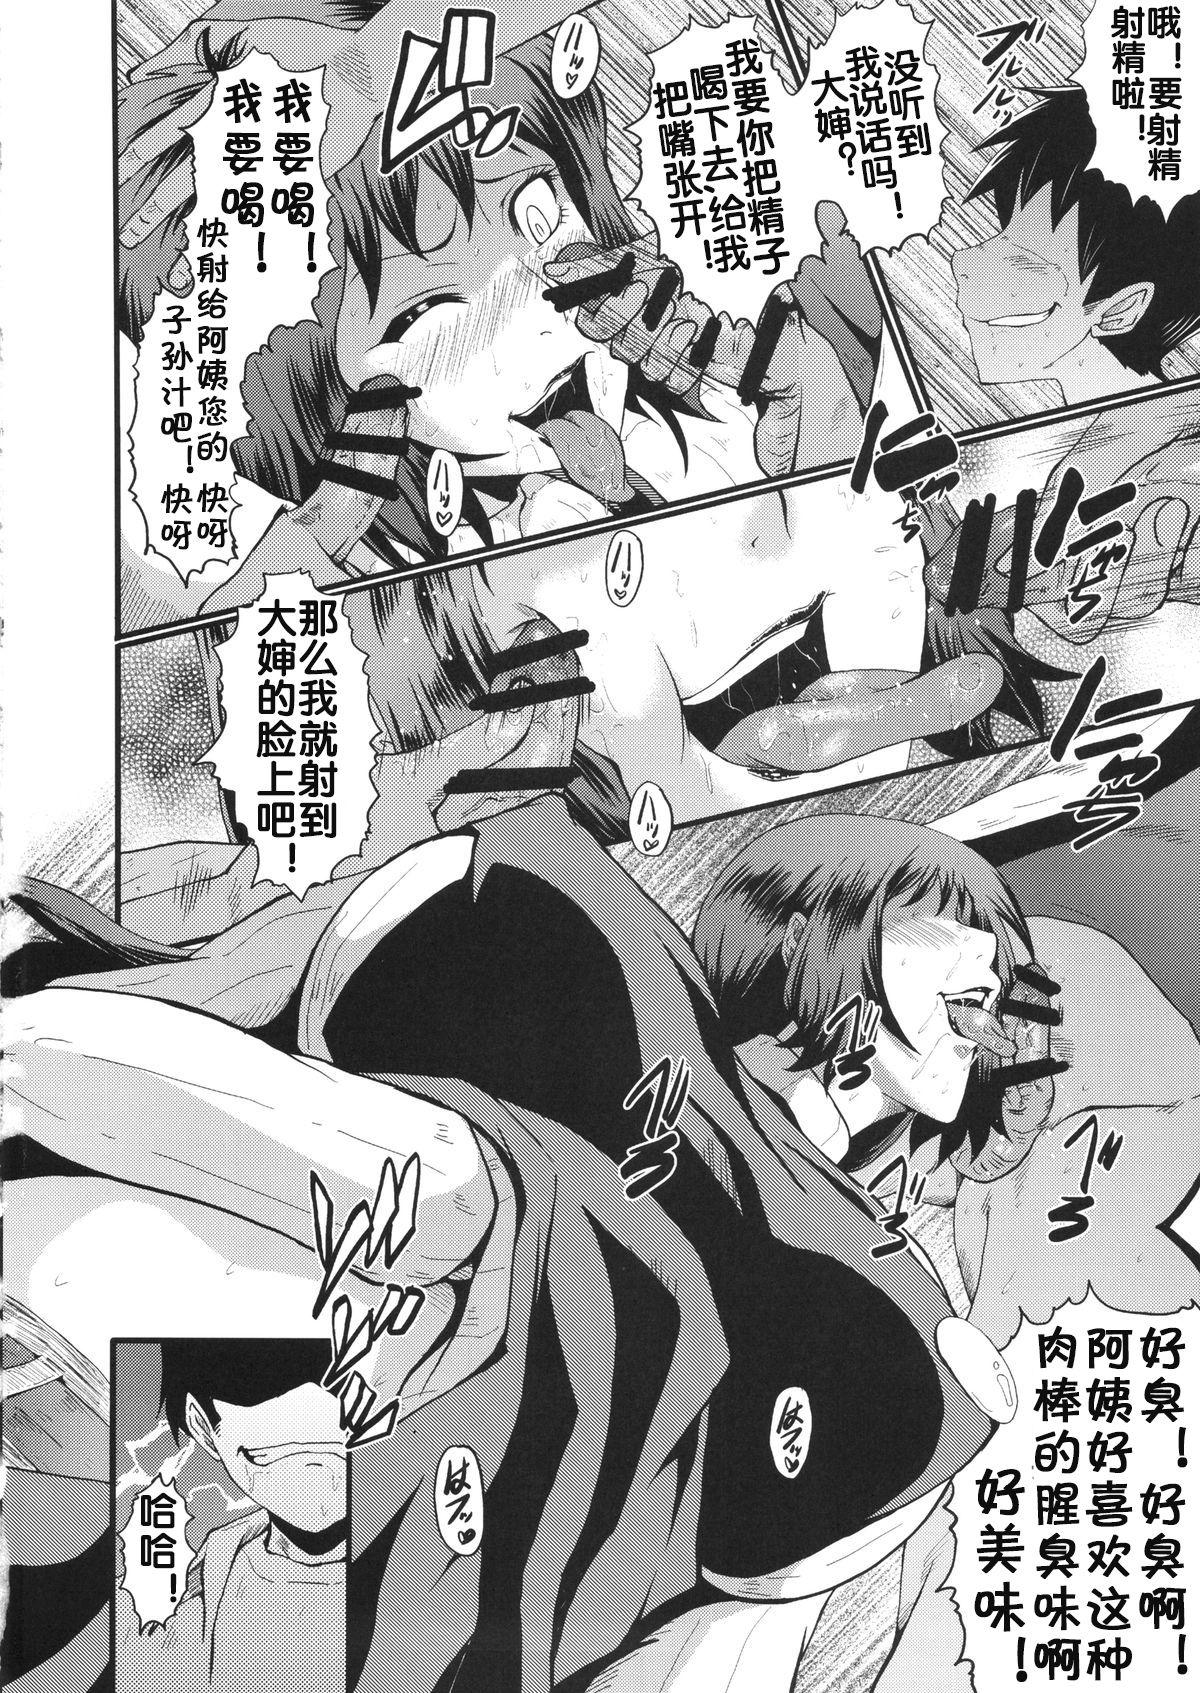 Fleshlight Urabambi Vol. 49 Kaa-san wa Boku ga Shiranai Uchi ni Omanko ni DoHamari shite mashita. - Gundam build fighters Str8 - Page 9